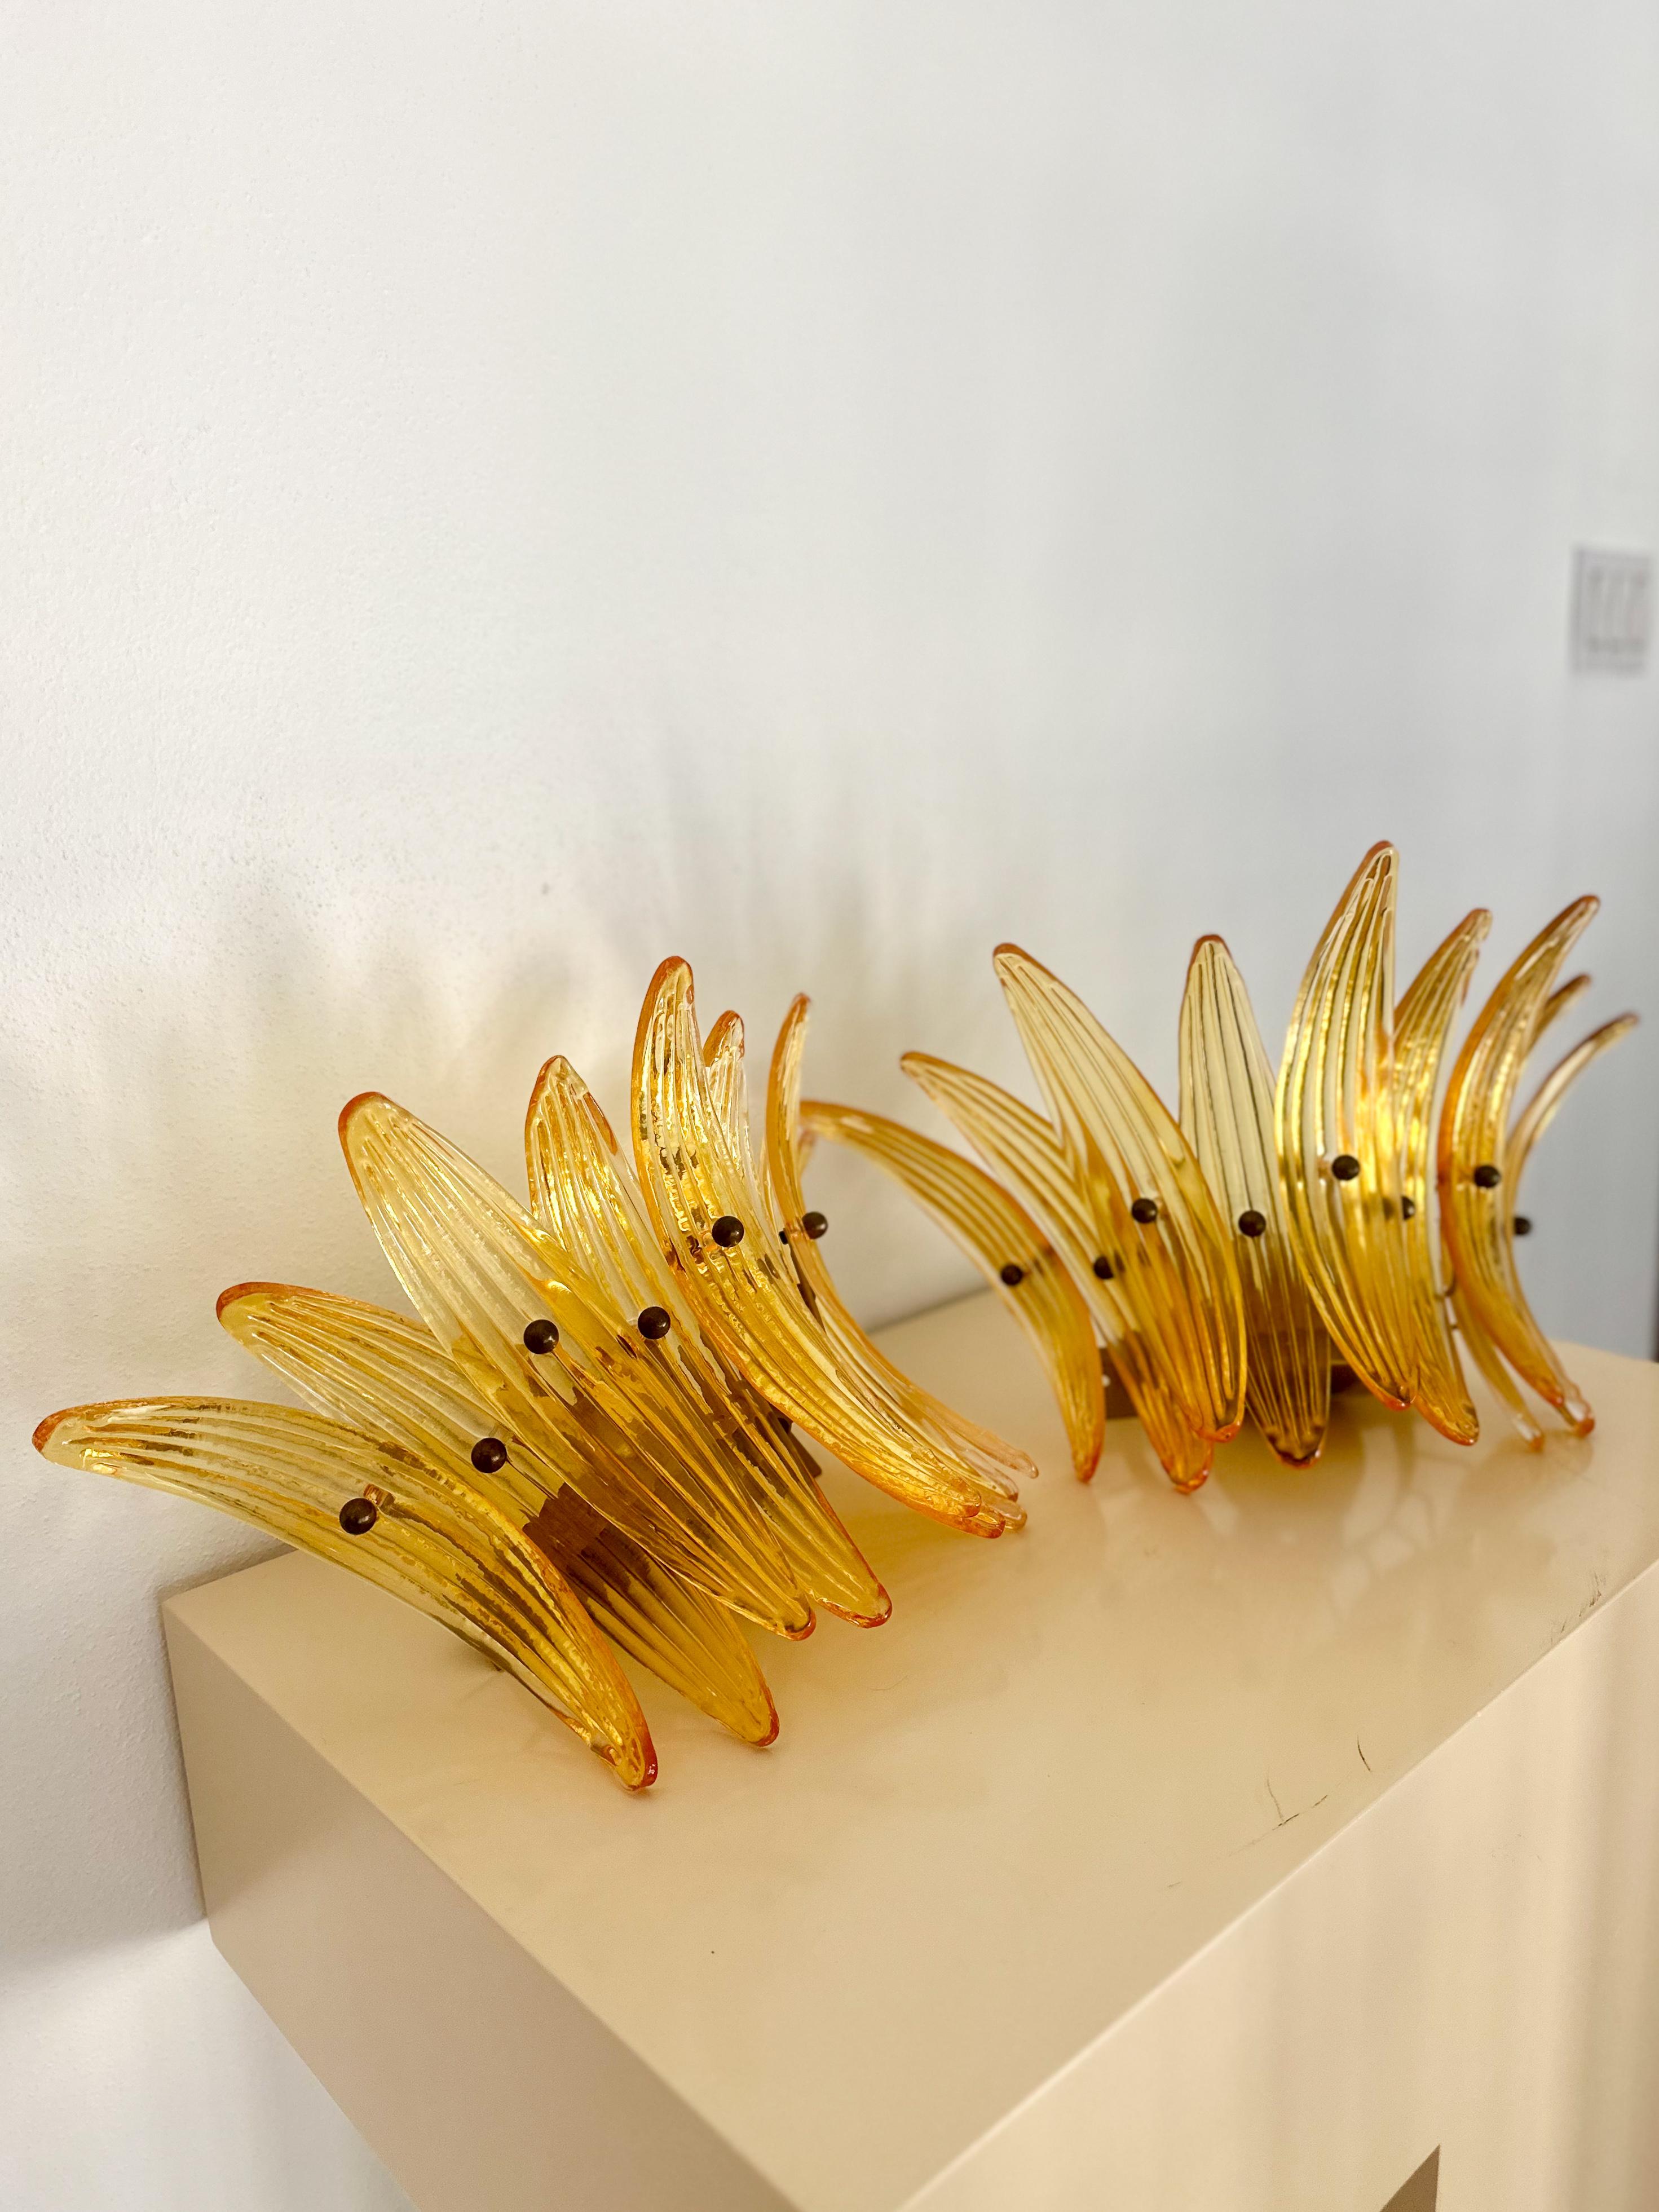 Superbes appliques murales à palmettes en verre soufflé à la main de Murano, C.C. Chaque applique comporte 9 appliques concaves en verre ondulé de couleur ambre, fixées au cadre par des ferrures en laiton dans un motif de palmier. Ensemble, la